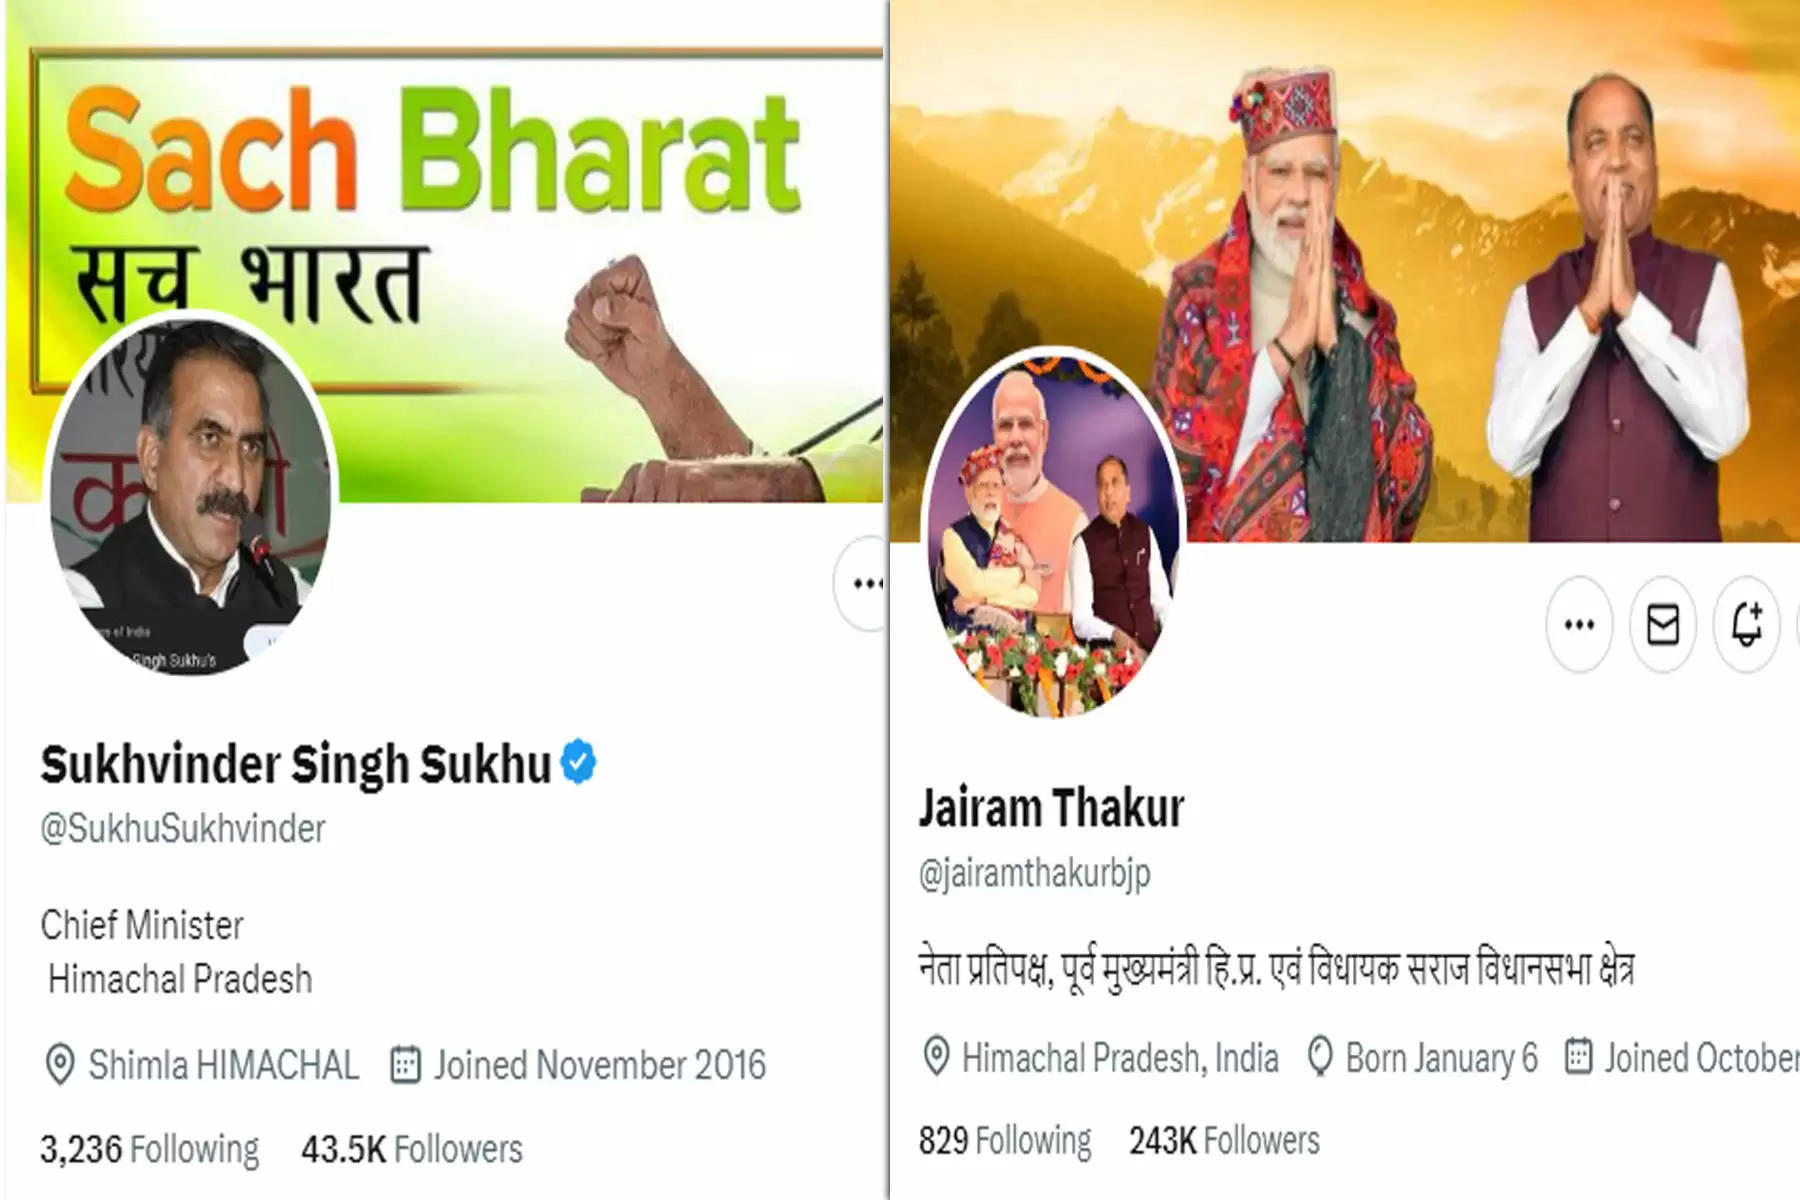 मुख्यमंत्री सुखविंद्र सिंह सुक्खू और उपमुख्यमंत्री मुकेश अग्निहोत्री ने ब्लू टिक के लिए सब्सक्रिप्शन ली है। दोनों के ट्विटर अकाउंट पर ब्लू टिक है।     पूर्व मुख्यमंत्री व नेता प्रतिपक्ष जयराम ठाकुर के ट्विटर अकाउंट का ब्लू टिक हटाया जा चुका है। इसके अलावा भाजपा प्रदेशाध्यक्ष व सांसद सुरेश कश्यप और पूर्व विधानसभा अध्यक्ष विपिन परमार के अकाउंट पर भी अब ब्लू टिक नहीं है। कांग्रेस प्रदेशााध्यक्ष व सांसद प्रतिभा सिंह, लोक निर्माण मंत्री विक्रमादित्य सिंह के ट्विटर अकाउंट भी बिना ब्लू टिक के दिखाई दे रहे हैं। 